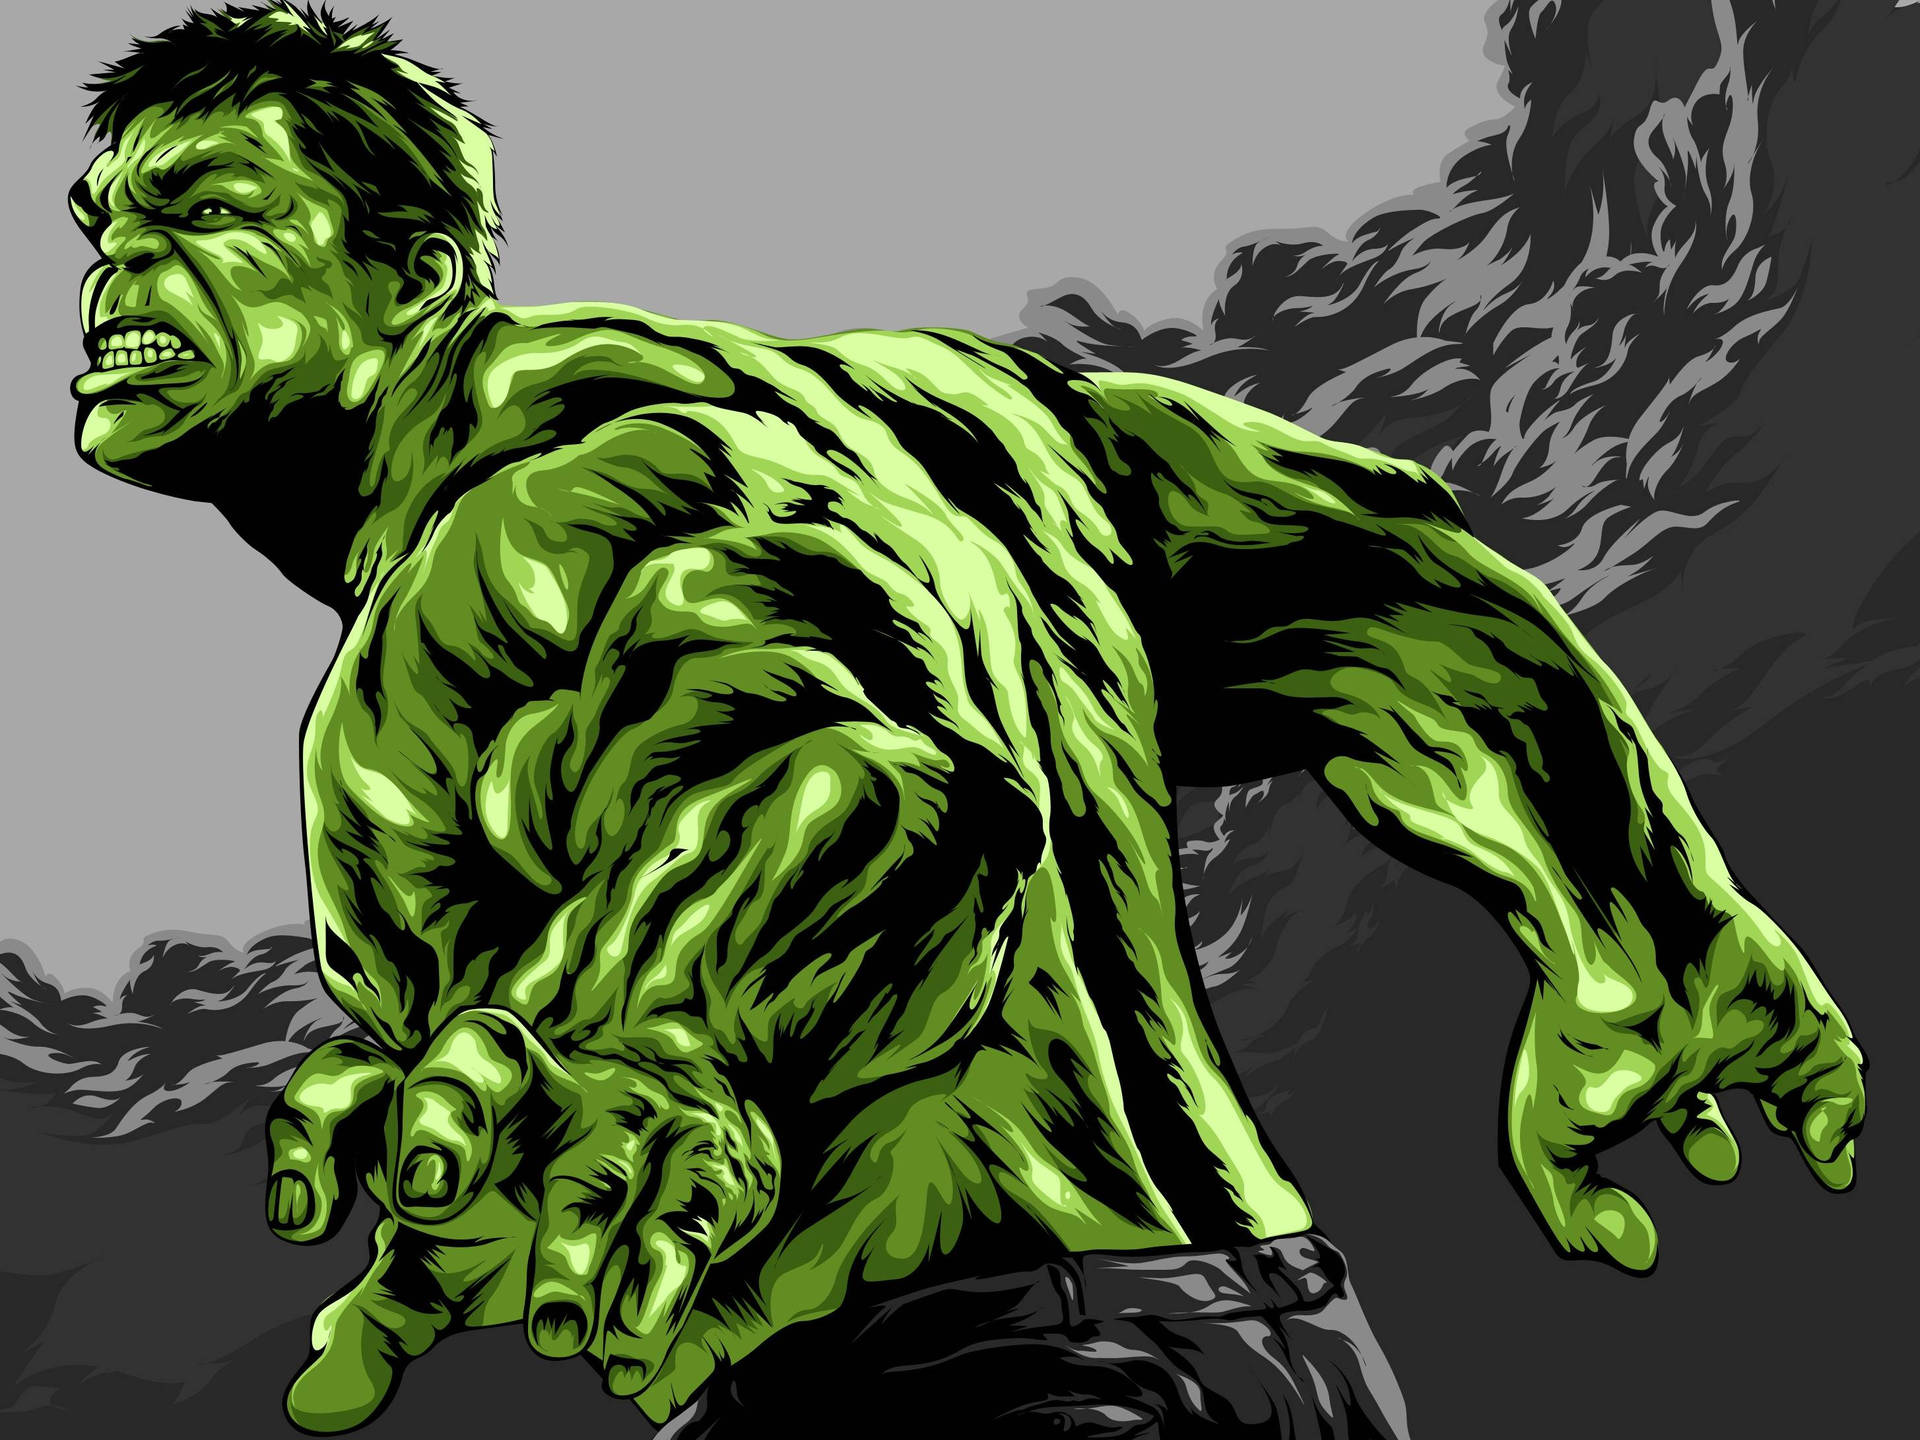 Green Giant Hulk Wallpaper HD|4K cho Android - Apk Tải về